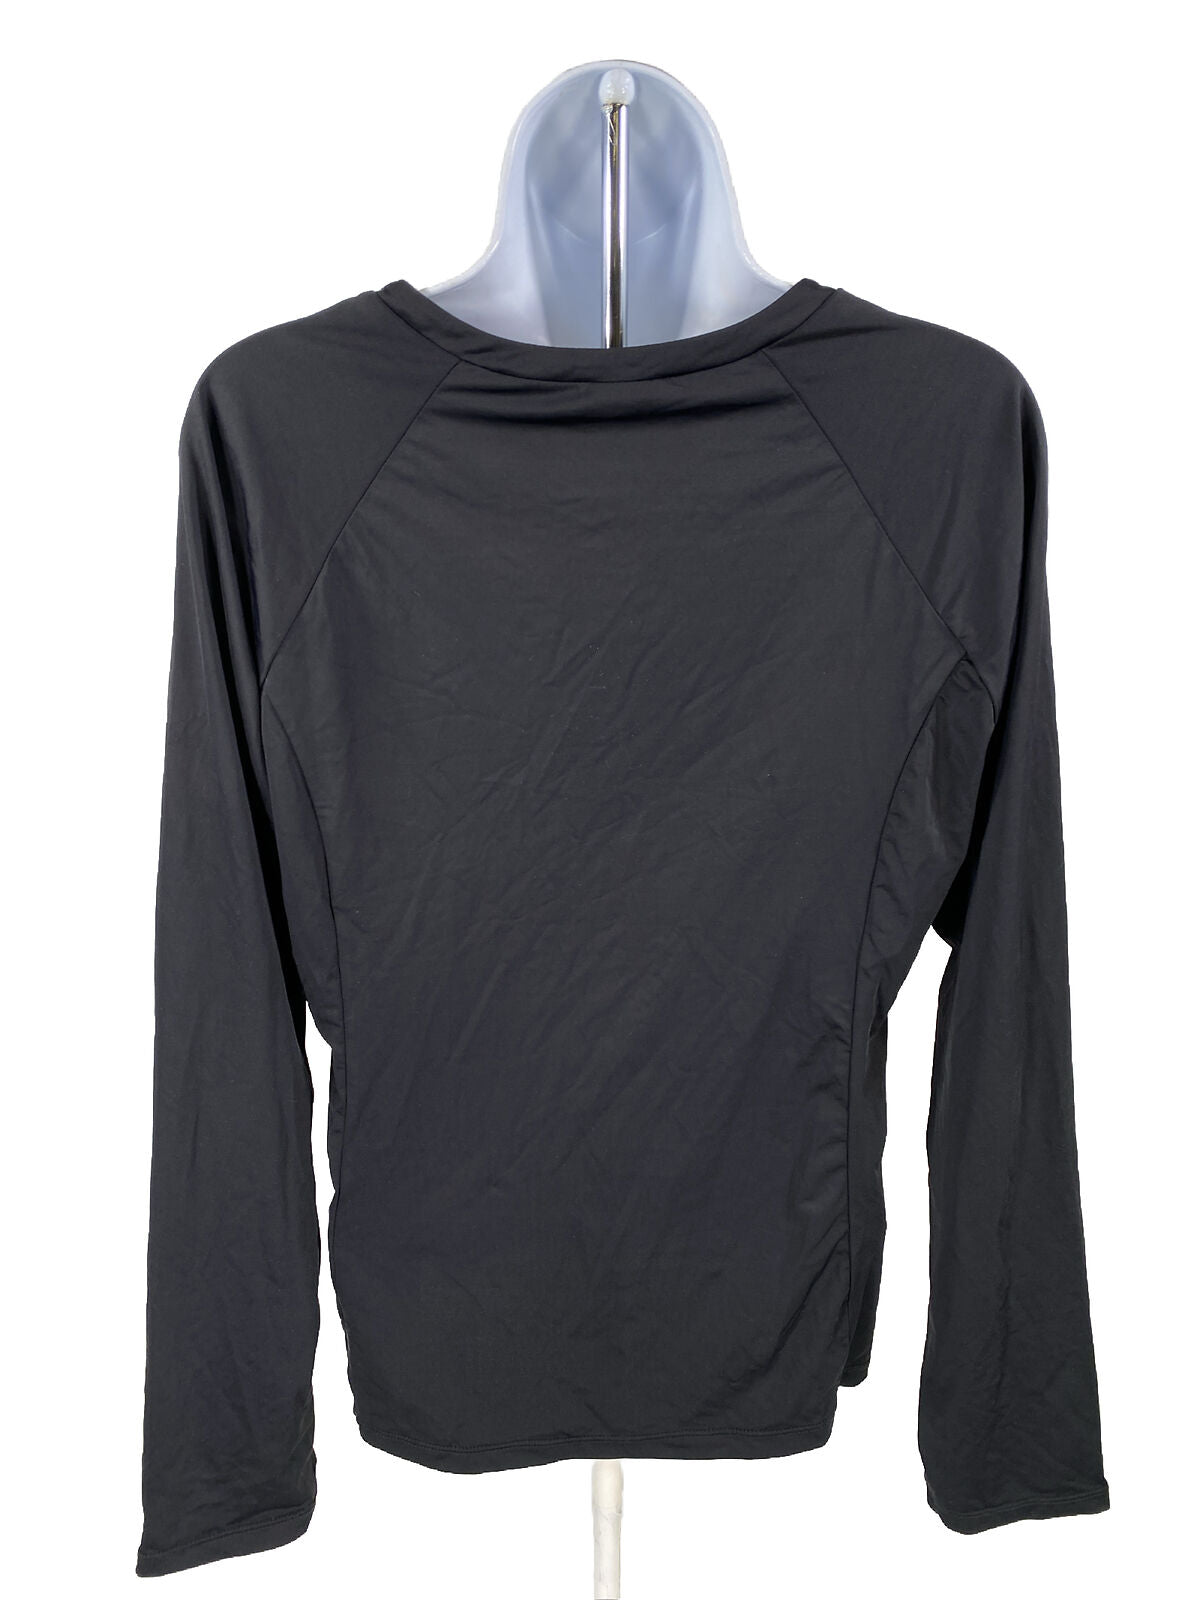 NUEVA camiseta deportiva de manga larga negra/blanca APT.9 para mujer - XL